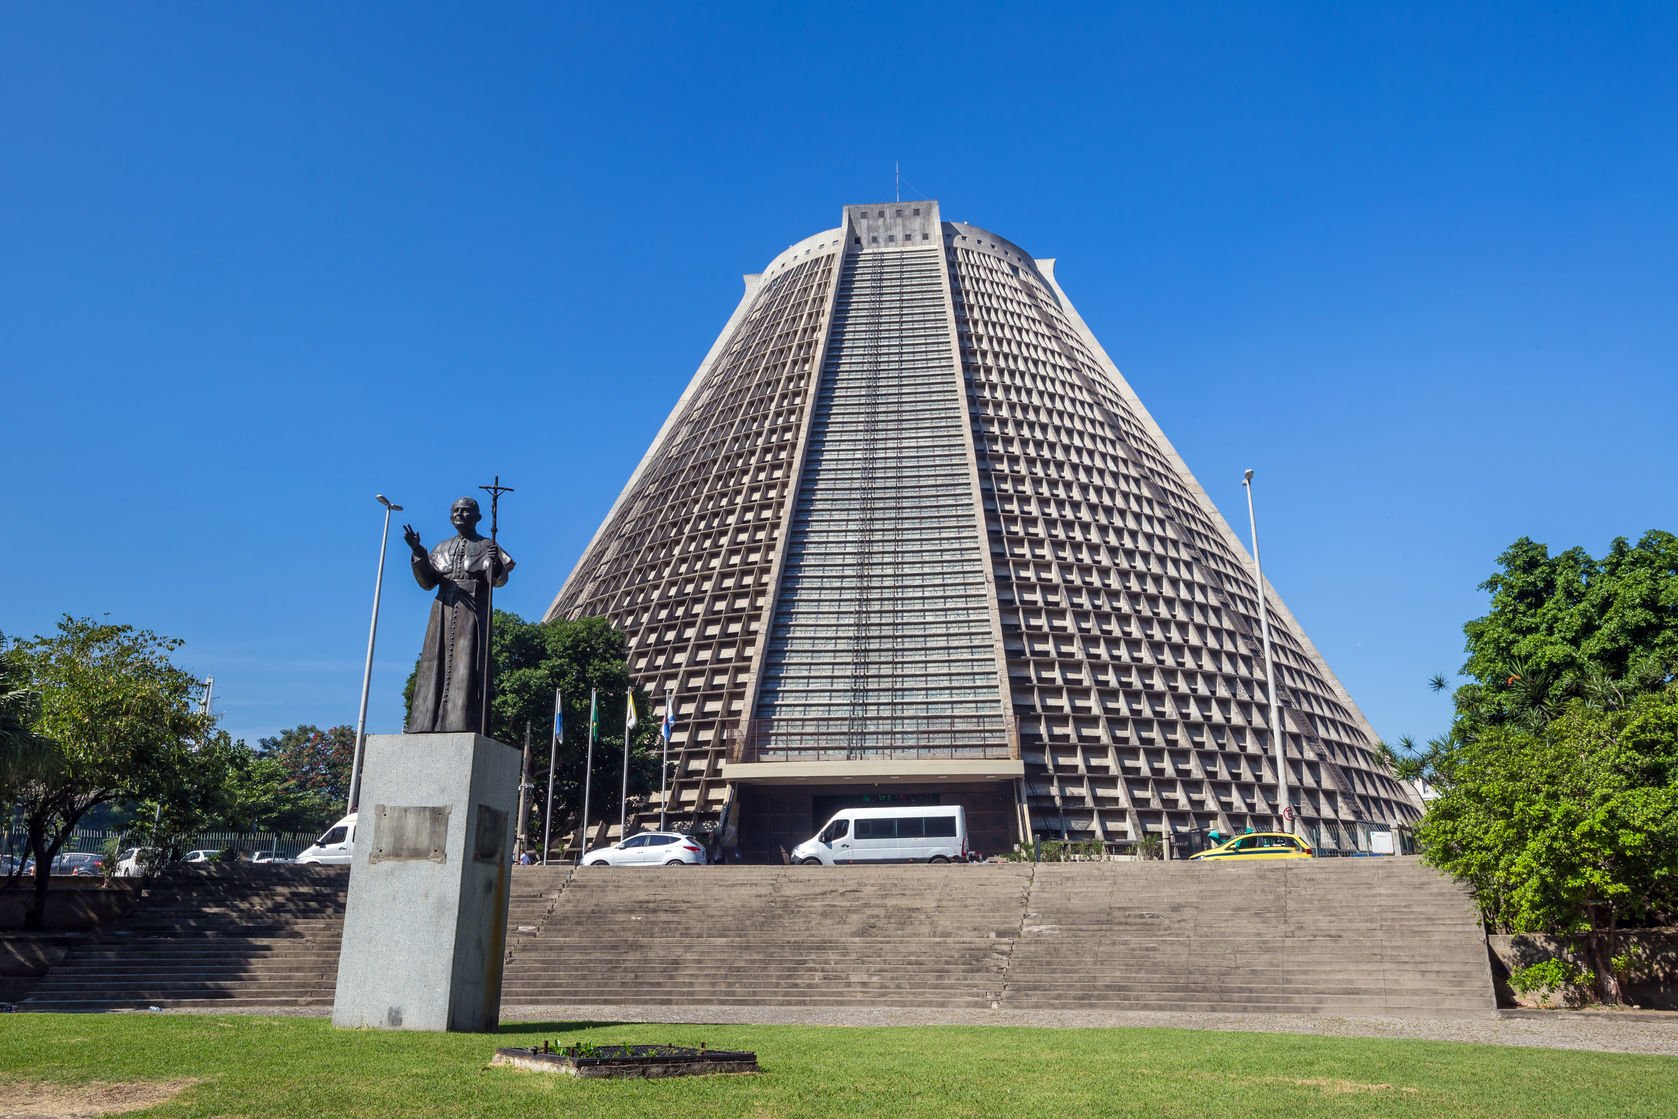 Położona w samym centrum Rio de Janeiro Zaprojektował ją miejscowy architekt Joaquim Correa. Jest to kościół skalny. 
Fot. Barwyszkla